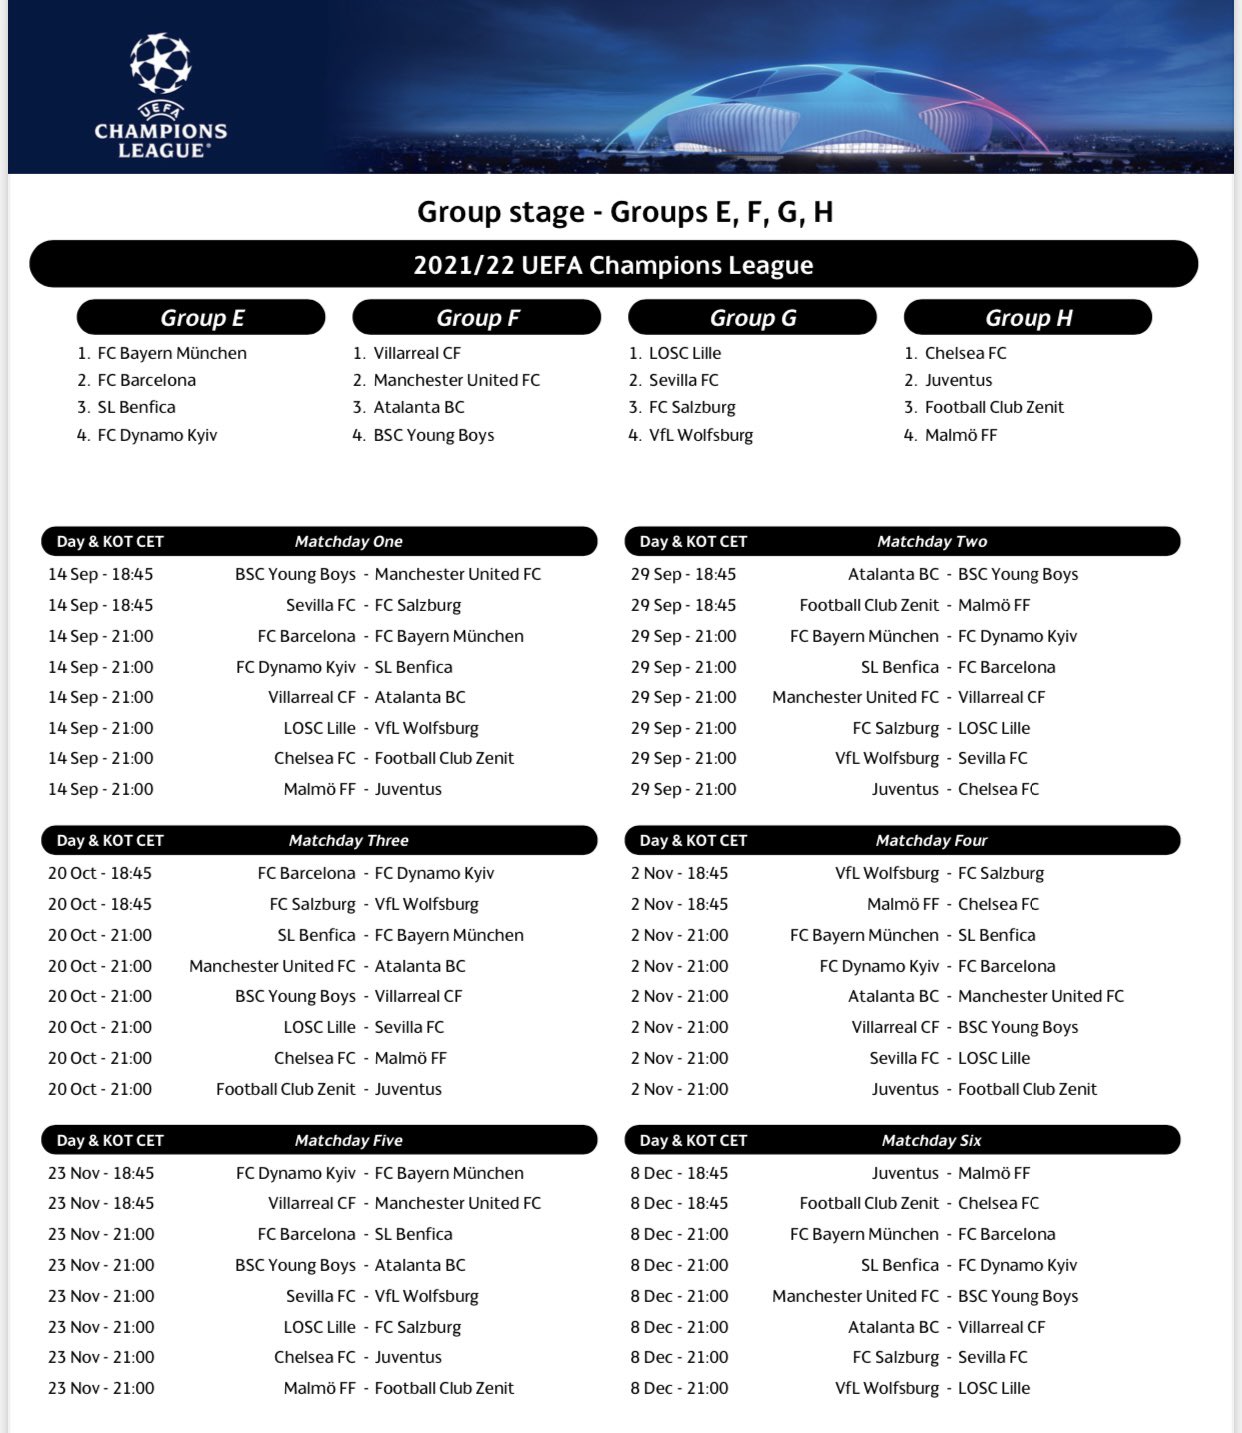 Carrusel Deportivo on Twitter: "⏰ CONFIRMADOS los horarios para los partidos de la fase grupos la @ChampionsLeague 📋 Aquí tienes el calendario completo de la primera fase de esta